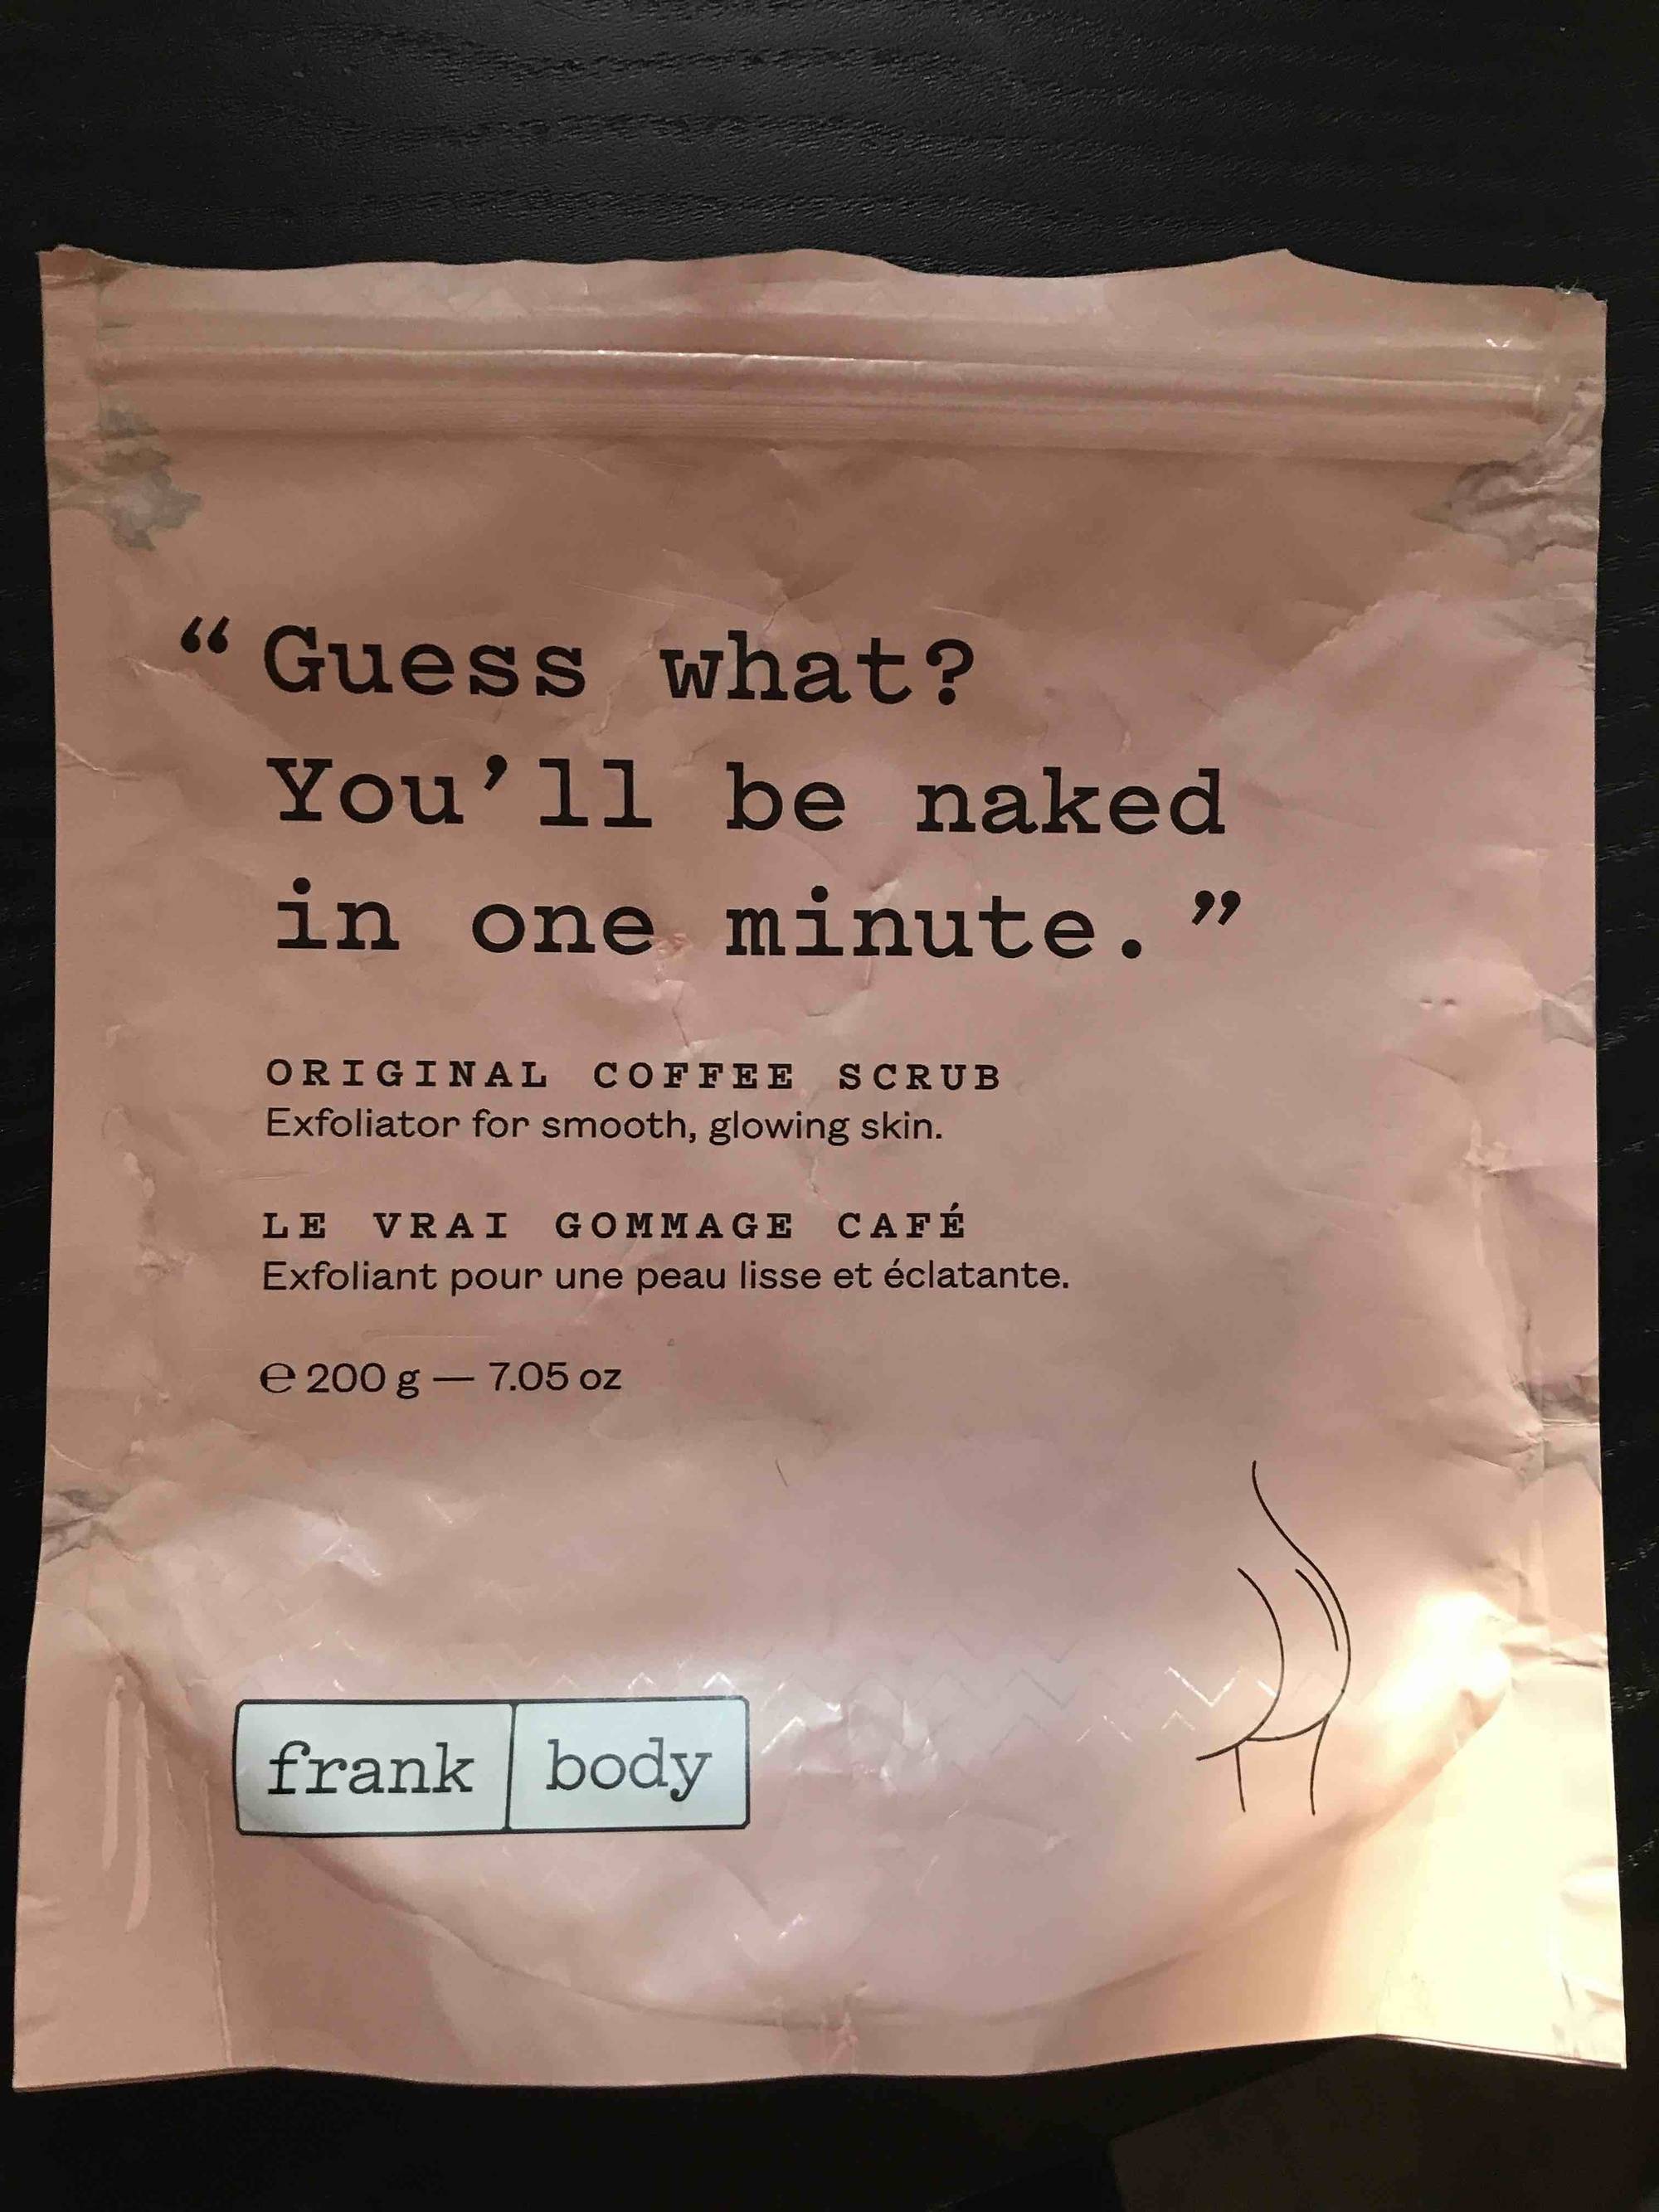 FRANK BODY - Le vrai gommage café - Exfoliant